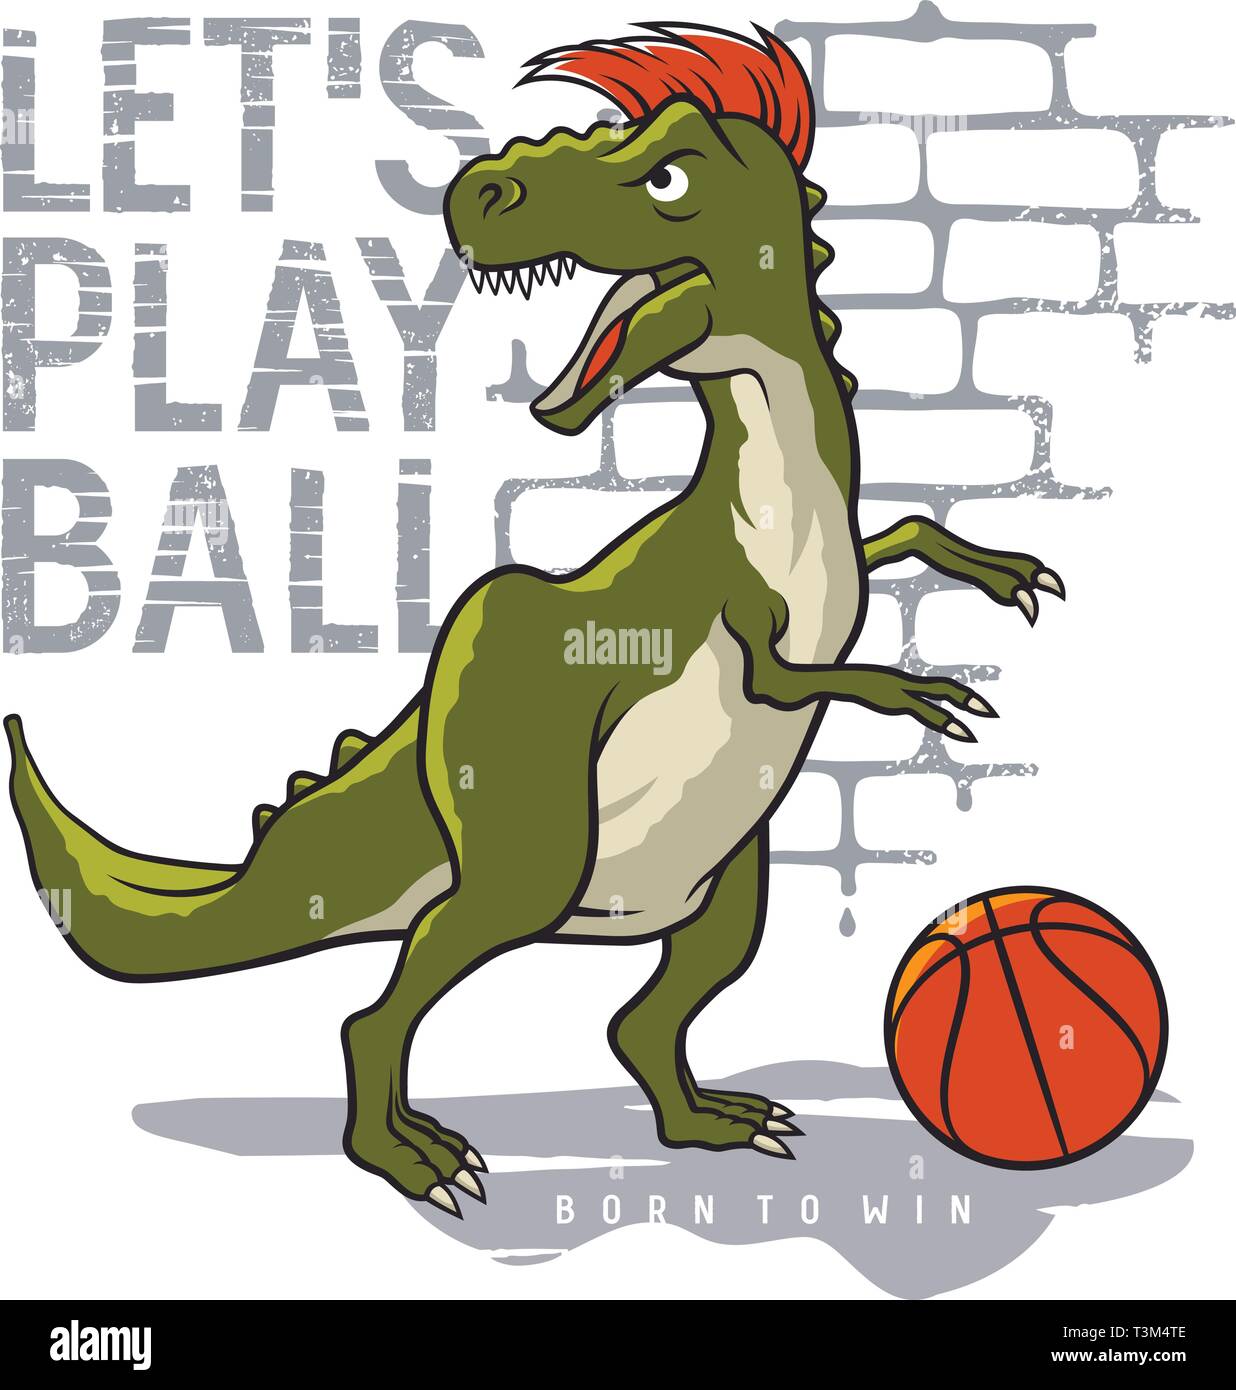 Vectores e ilustraciones de Diseno camiseta baloncesto hombre para  descargar gratis